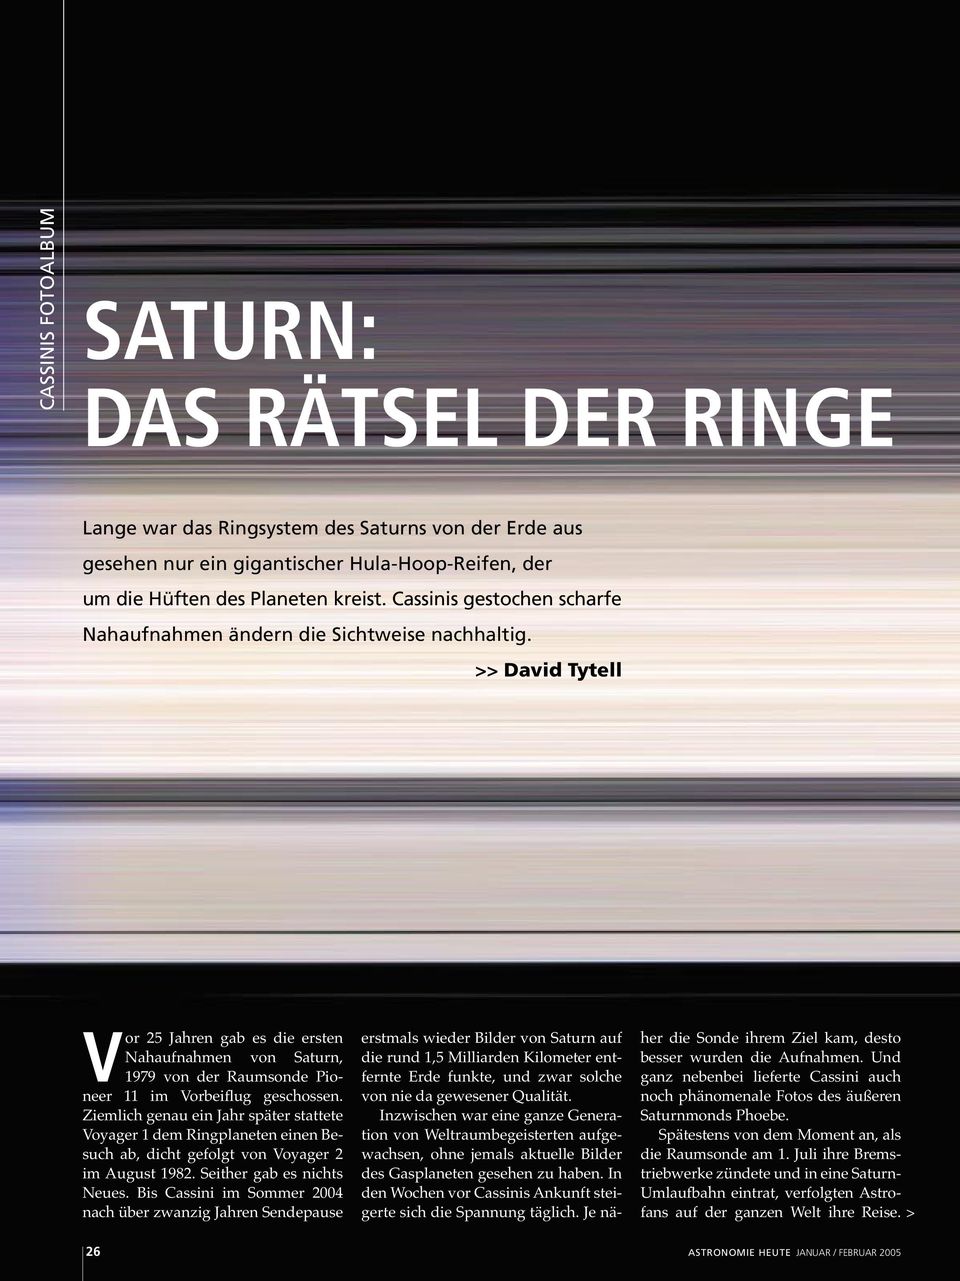 David Tytell Vor 25 Jahren gab es die ersten Nahaufnahmen von Saturn, 1979 von der Raumsonde Pioneer 11 im Vorbeiflug geschossen.